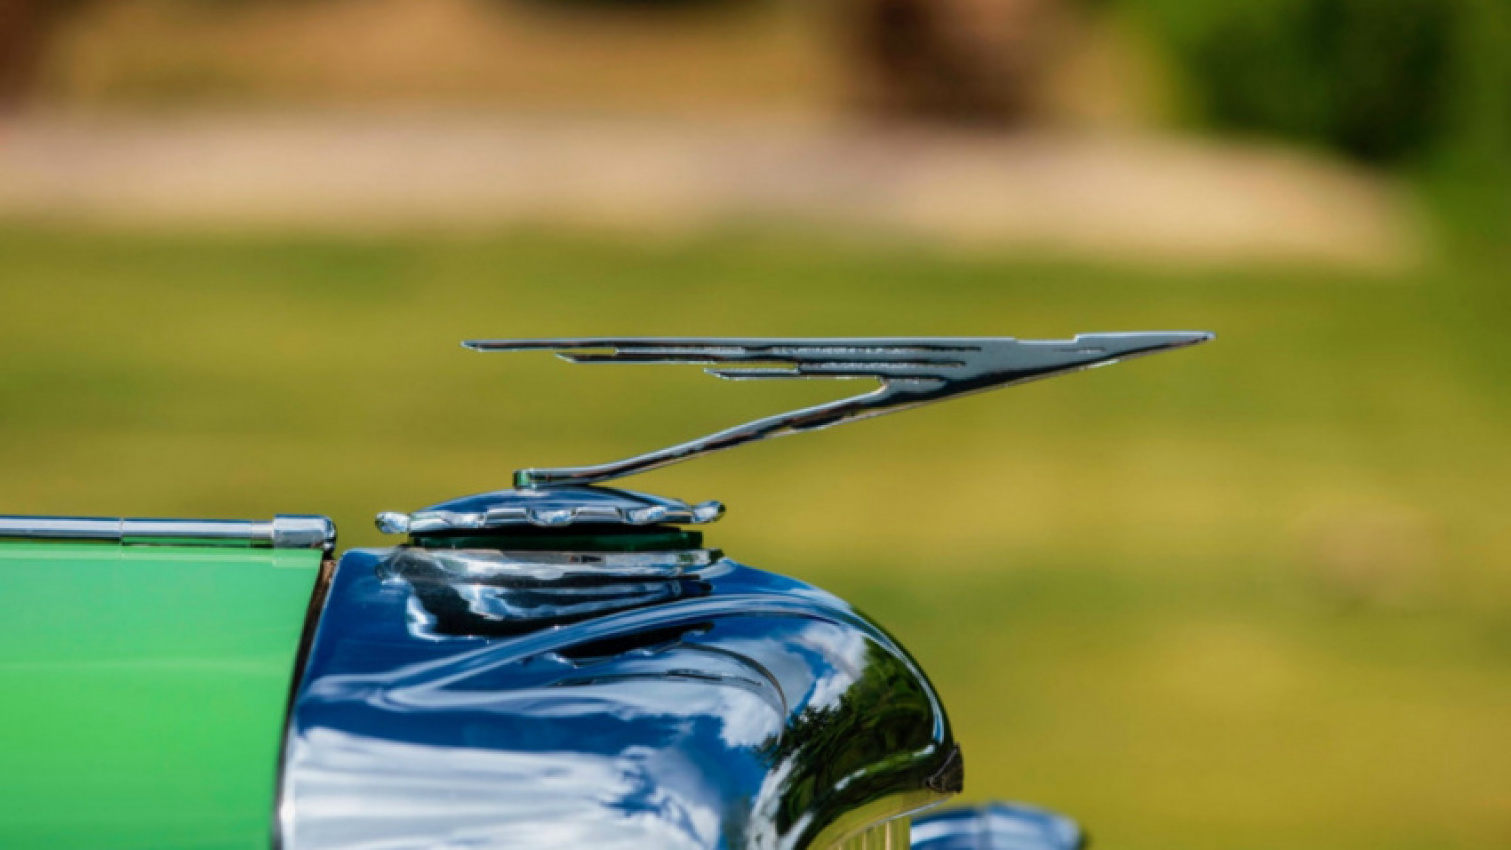 autos, cars, auctions, classic cars, duesenberg, mecum auctions, 1929 duesenberg model j murphy convertible coupe heads to auction